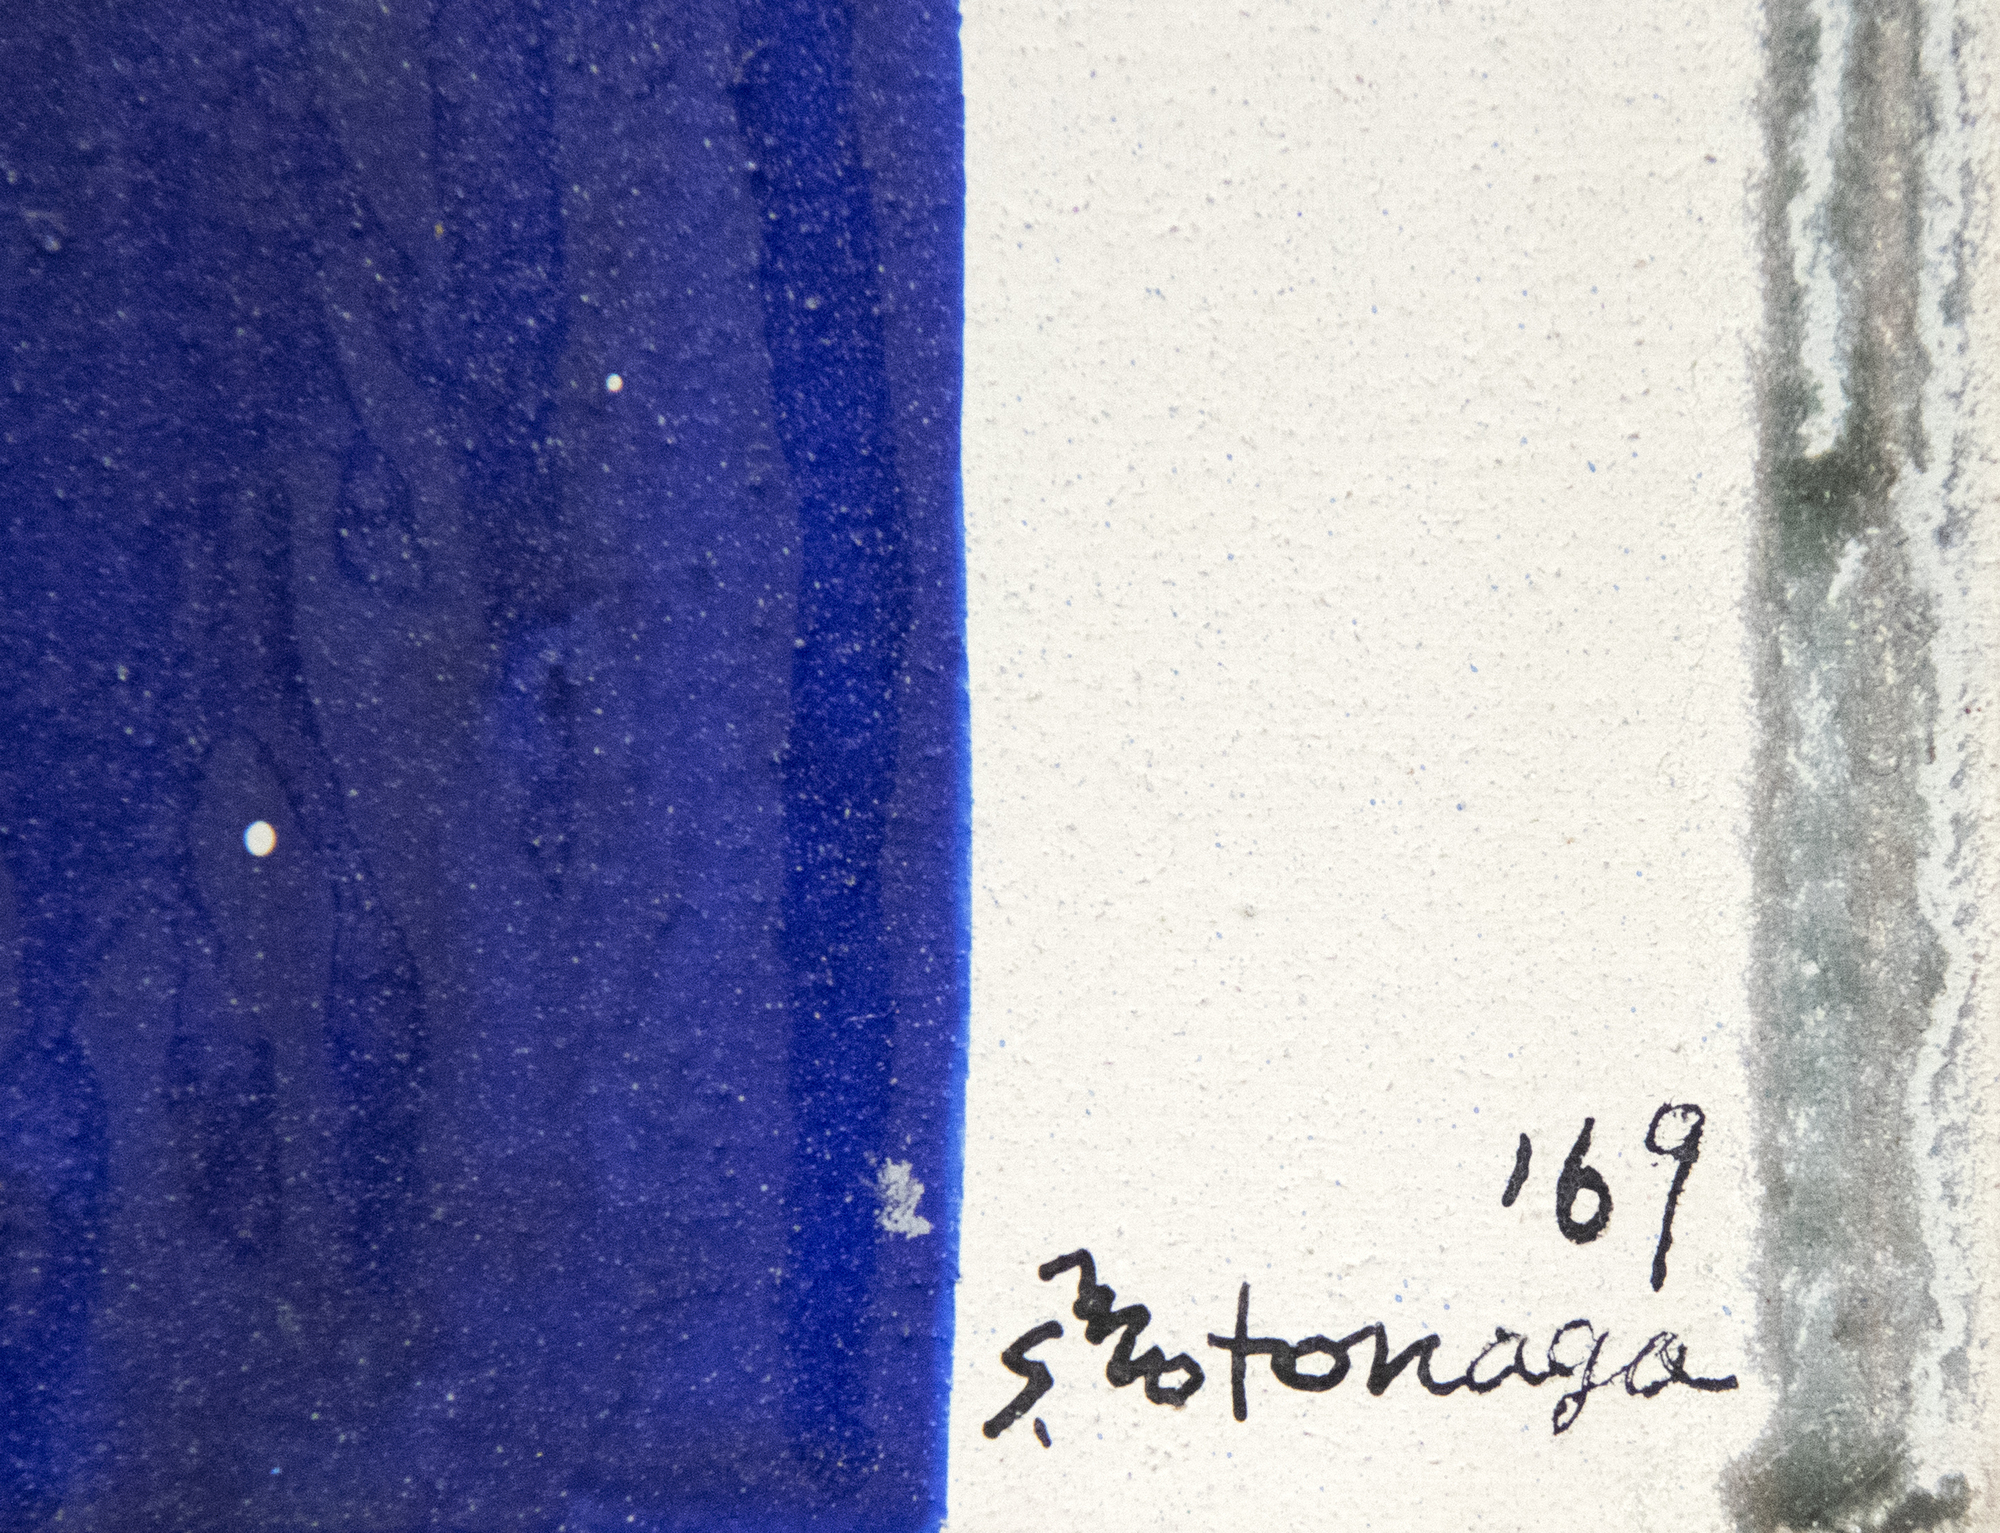 כחברה באגודת האמנות האגדית של גוטאי ששגשגה בין 1954 ל-1972, הופיעה סדאמסה מוטונגה כאשר האקזיסטנציאליזם הסוריאליסטי הפוסט-אטומי היה בחוד החנית של ההתפתחות האמנותית ביפן. עם זאת, הוא בחר בדרך אחרת. הוא הפנה את גבו להרס שחוללה המלחמה ויצר עבודה רעננה, שמחה ומשביעת. "ללא כותרת" מ-1969 הוא בסגנונו הקלאסי, שהתפתח במקביל לציוריו של מוריס לואיס, המכונים "רעלה". זוהי תצוגה מוצלחת להפליא של אוונגרד של Motonaga לקחת על Tarashikomi יפני מסורתי — הטכניקה הכוללת הטיית הבד בזוויות שונות כדי לאפשר תערובות של שרף ואמייל לזרום אחד על השני לפני הצבע יבש לחלוטין.